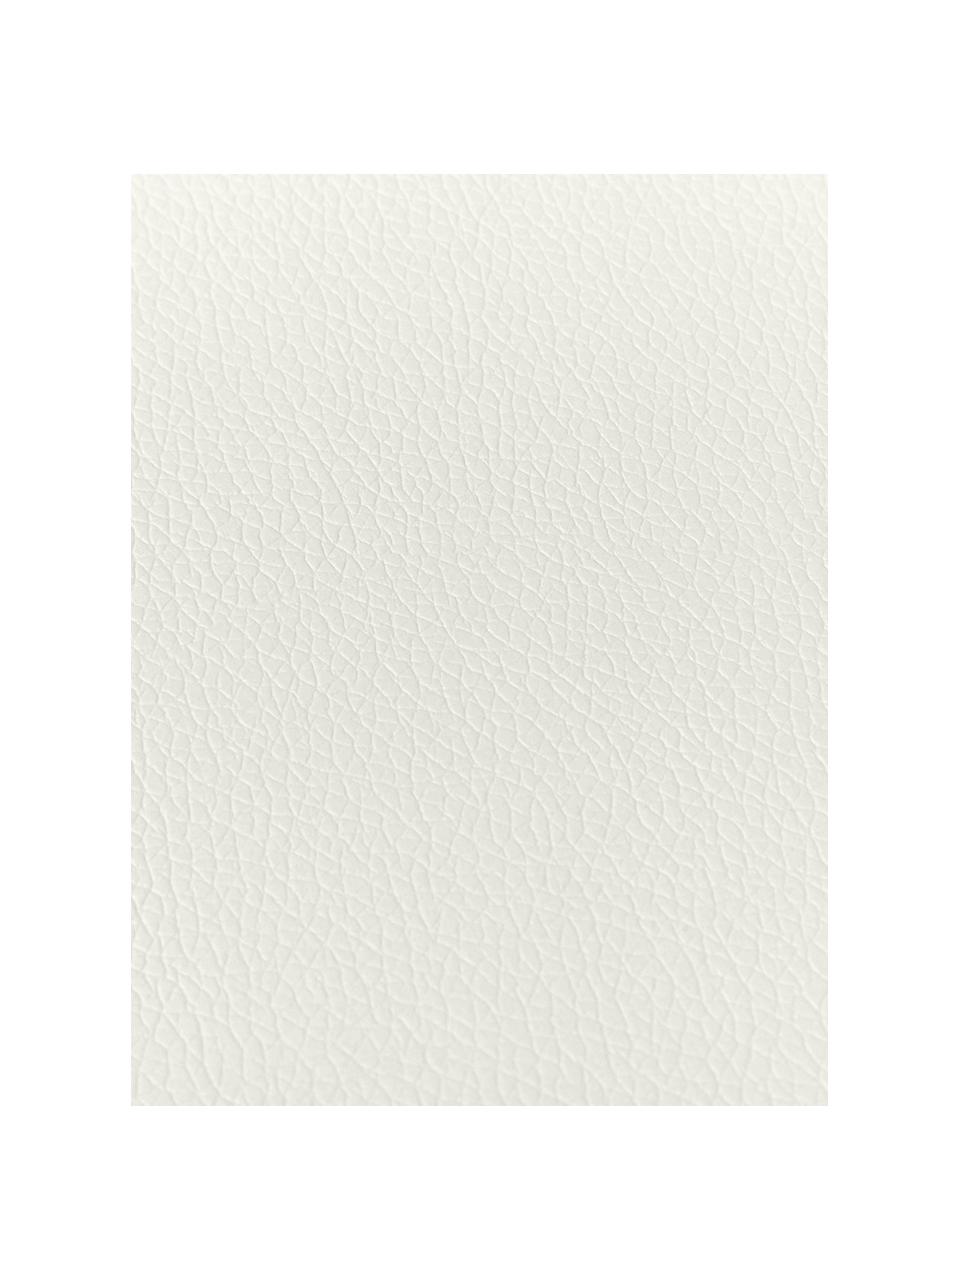 Ronde kunstleren placemats Pik, 2 stuks, Kunstleer (PVC), Gebroken wit, Ø 38 cm